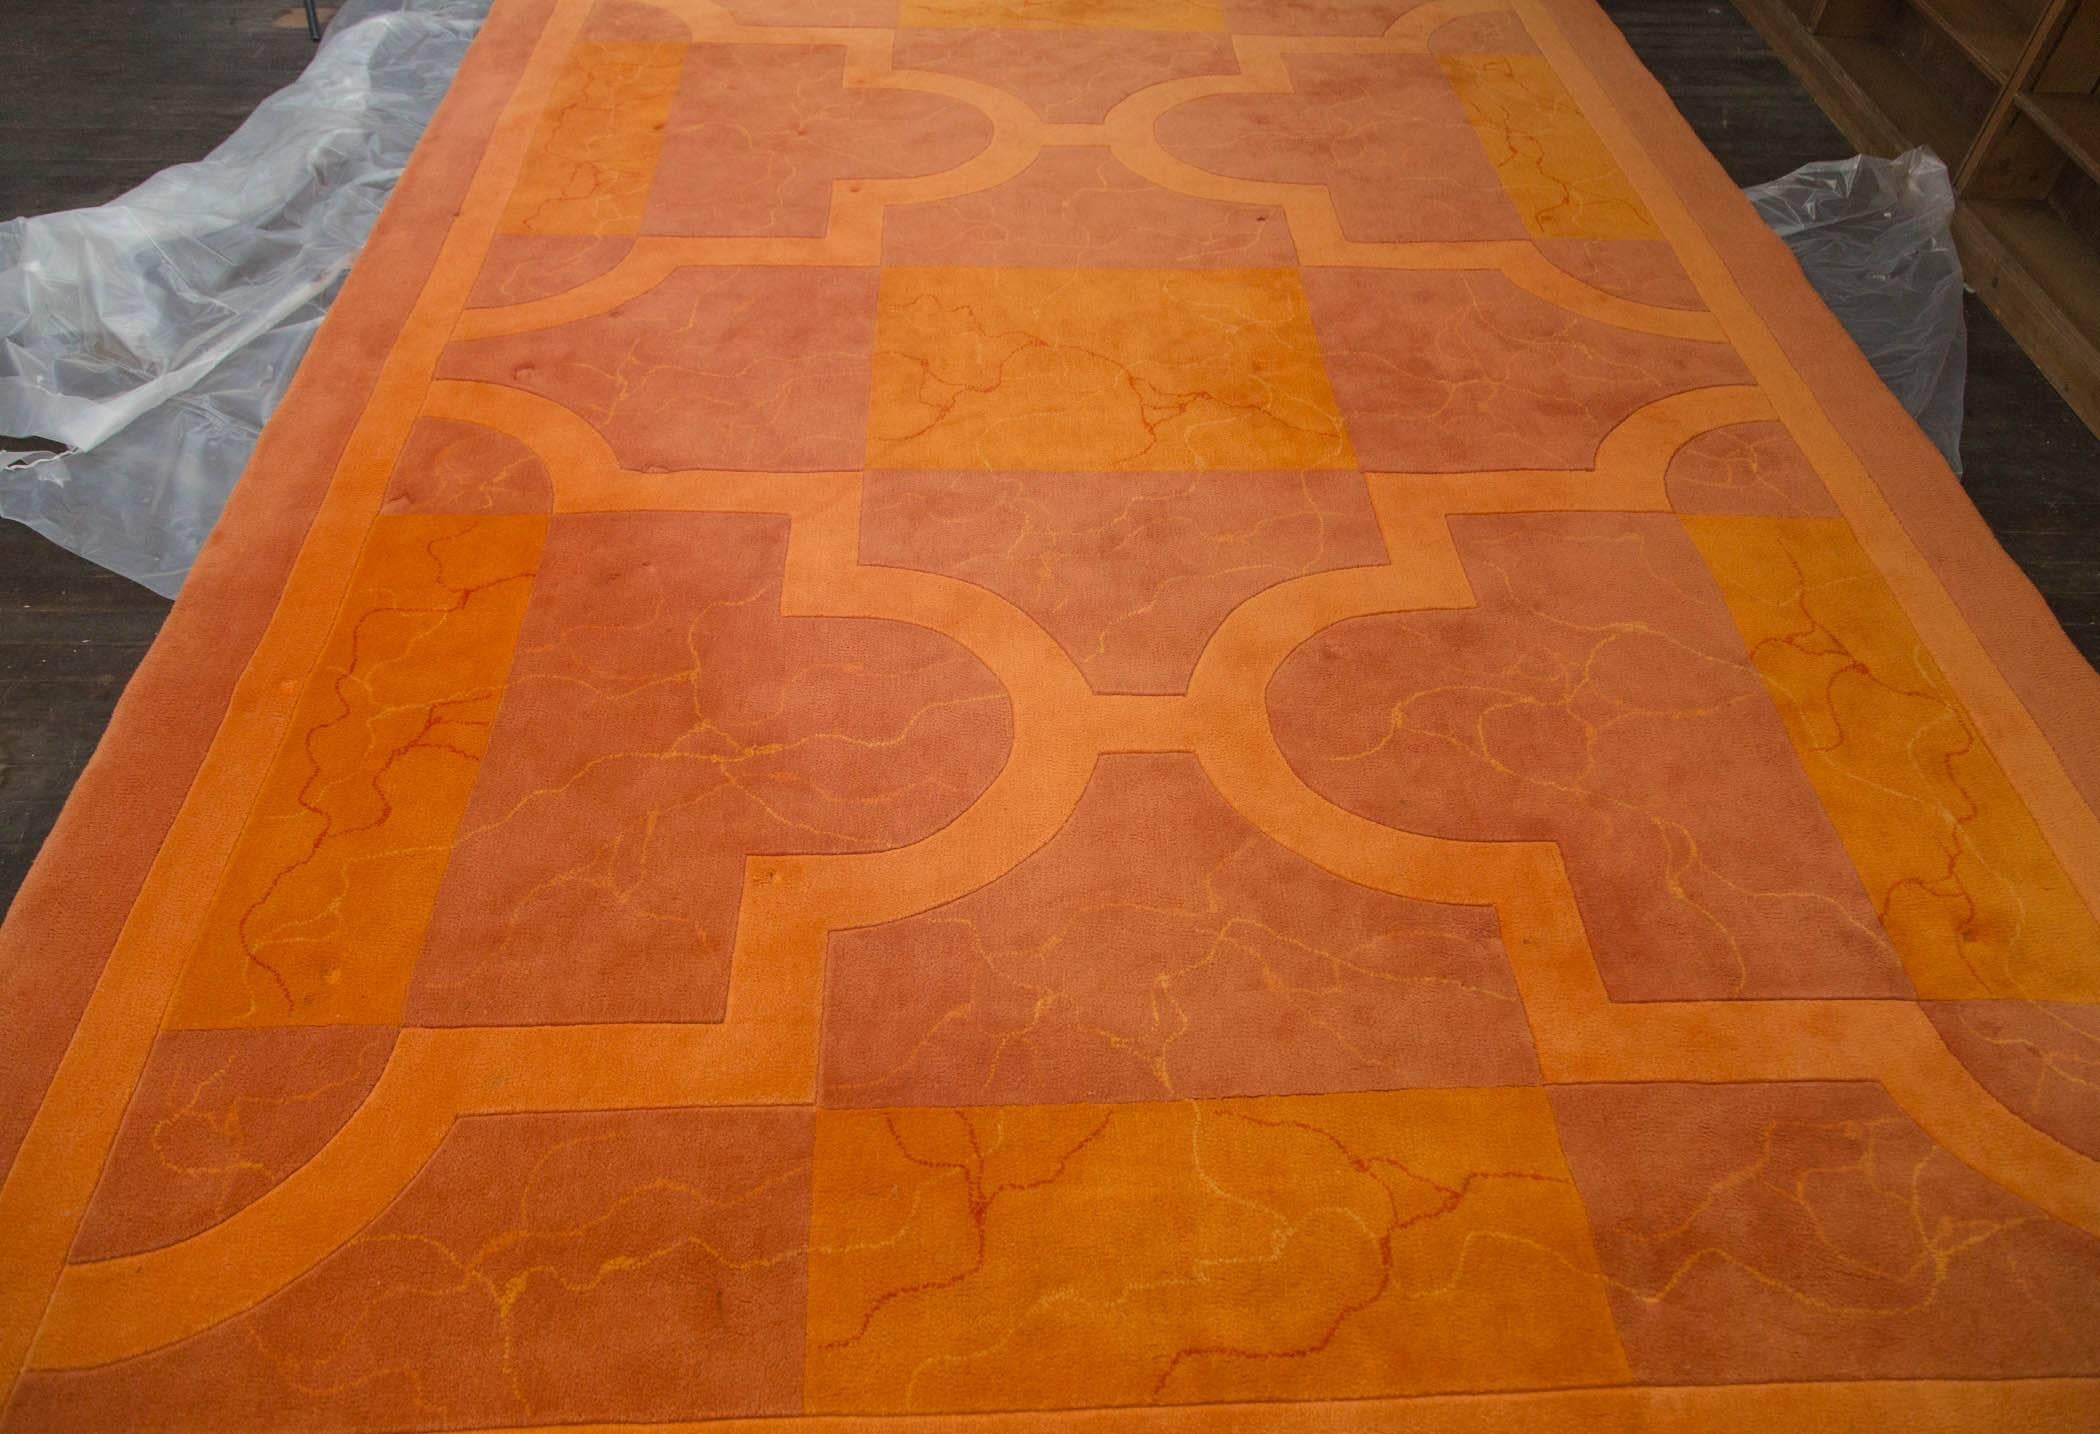 1970s Edward Fields carpet in shades of orange. 100 % wool.
Marked Edward Fields. Measures: 10' x 14